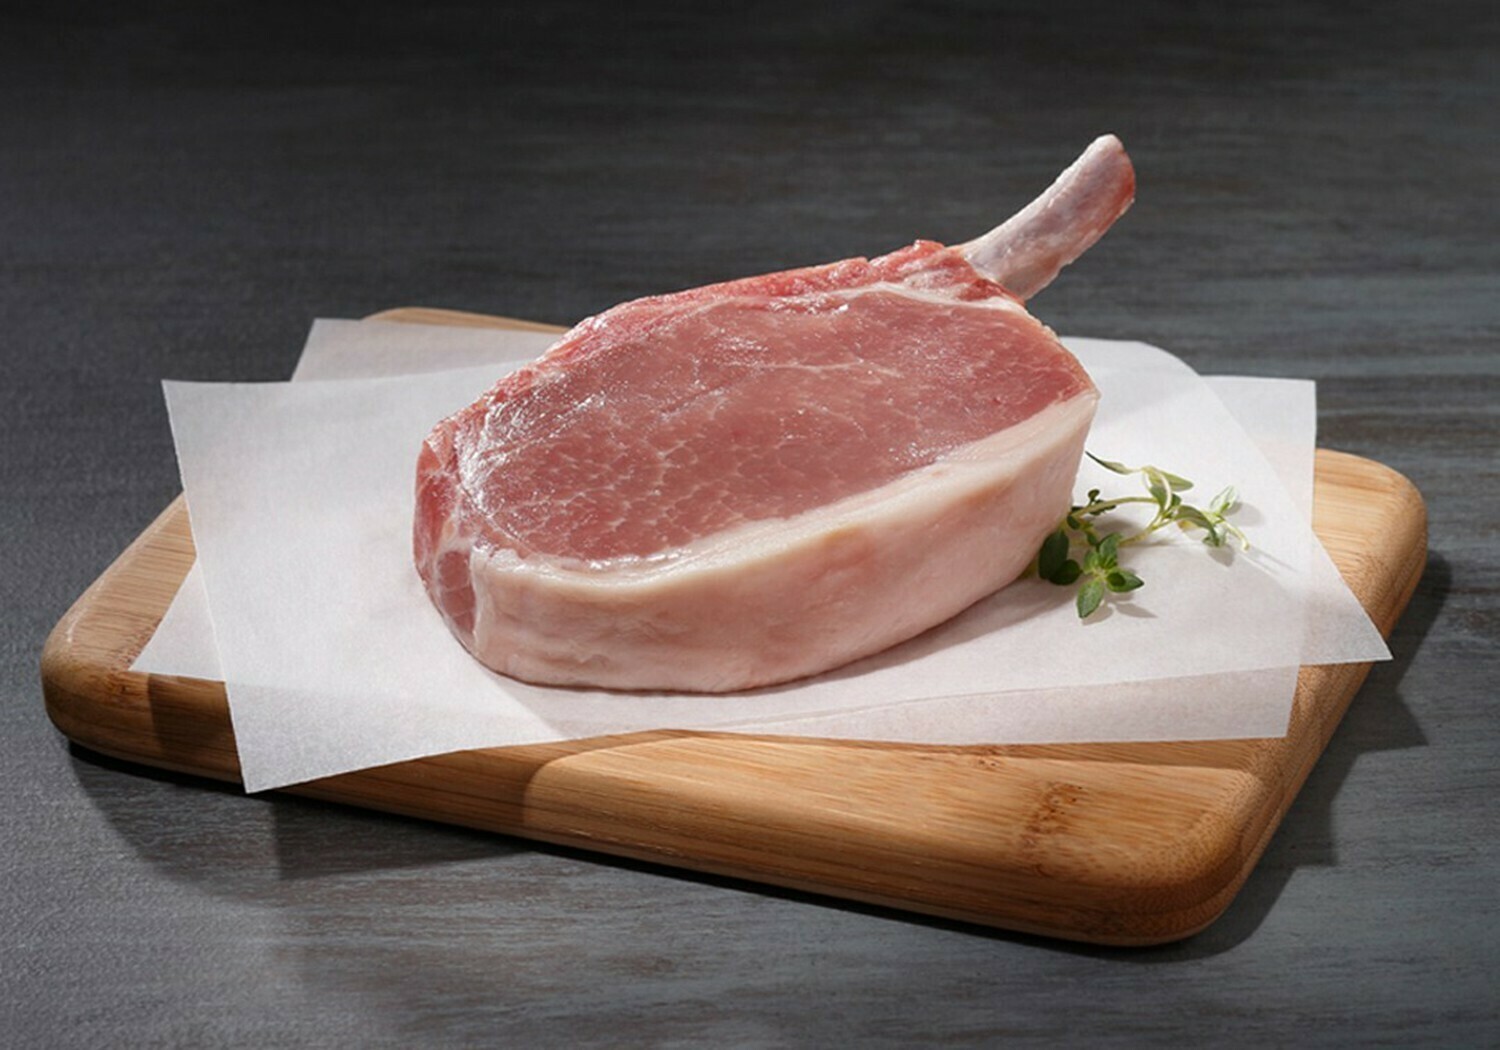 12oz Duroc Frenched Rib Cut Pork Chop